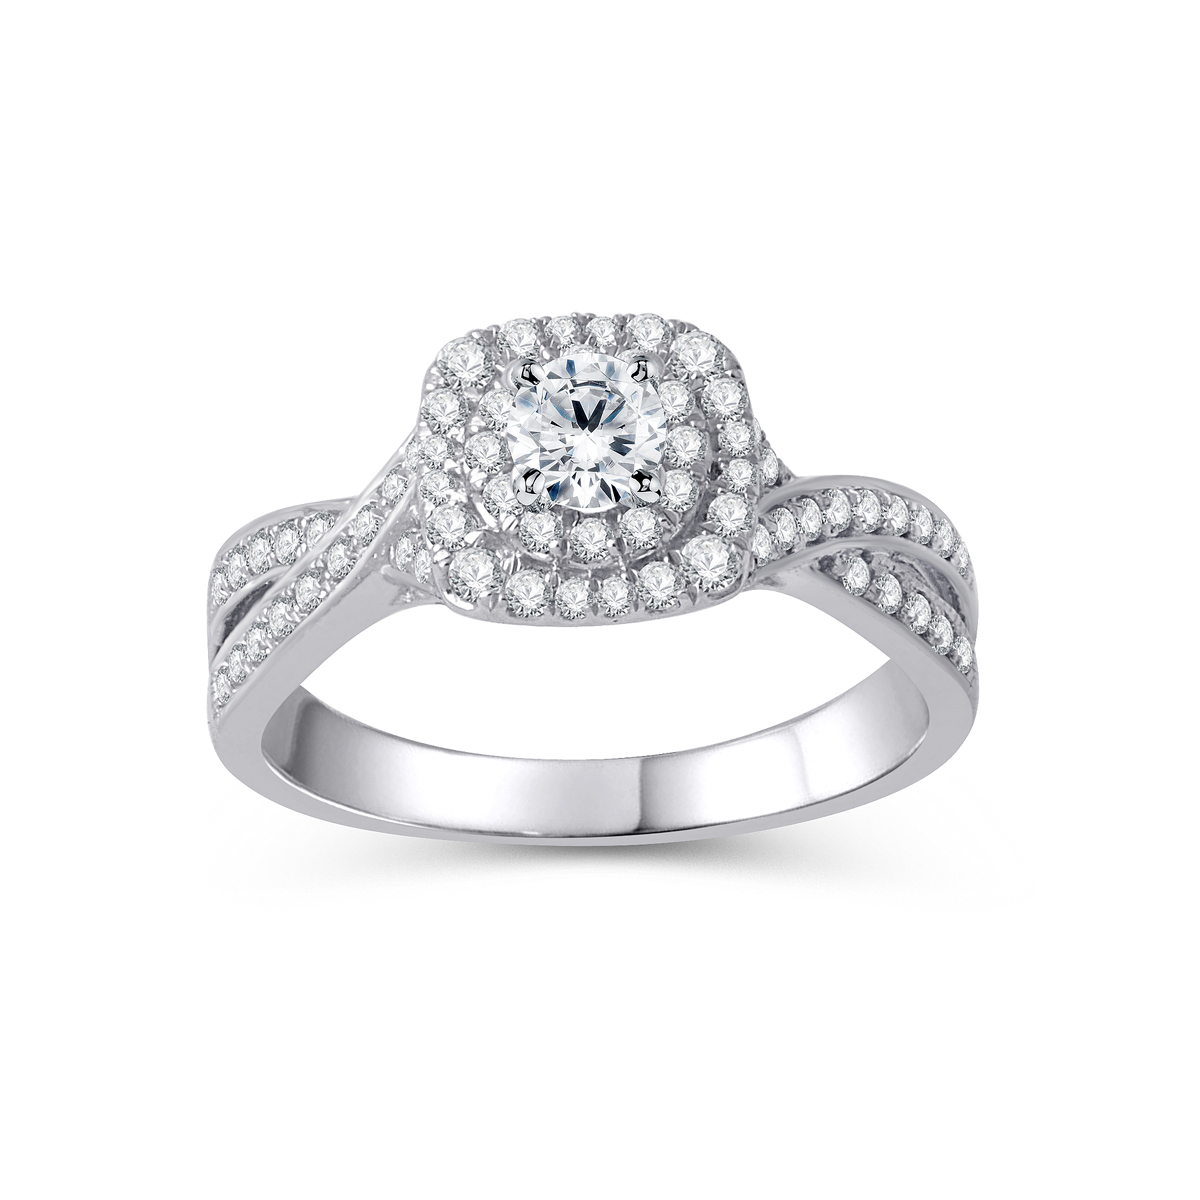 Paramount Gems 14 Karat White Gold Diamond Ring